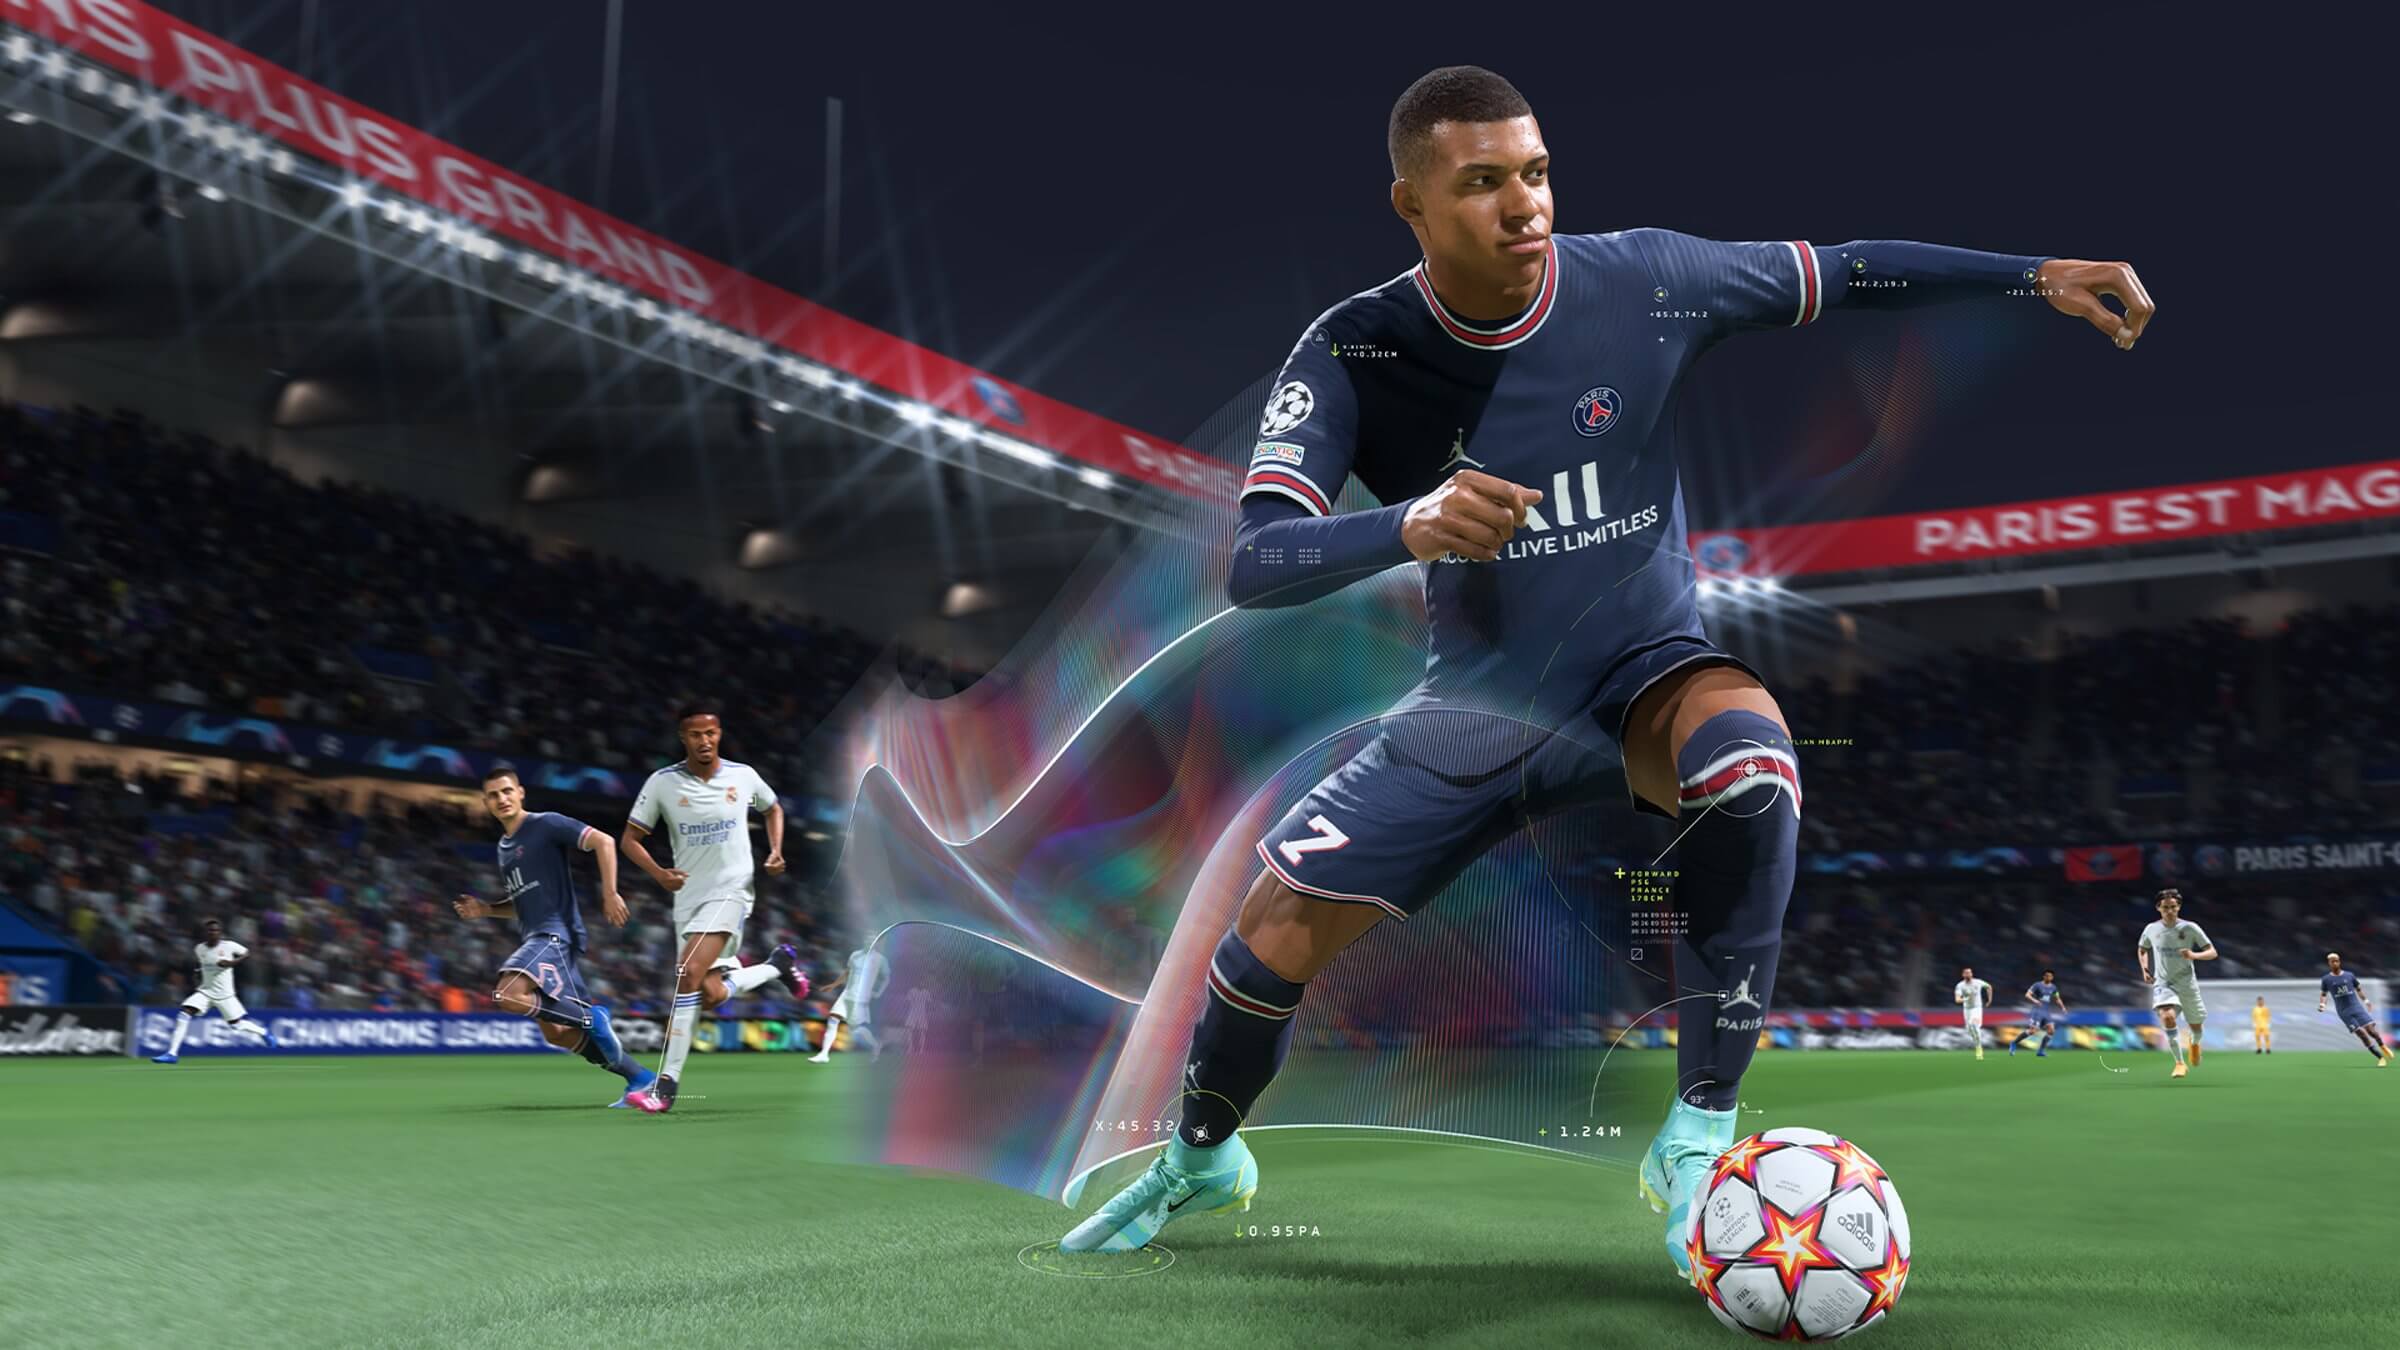 FIFA 22 - Novidades do modo carreira reveladas. - FIFAMANIA News - Jogue  com emoção.